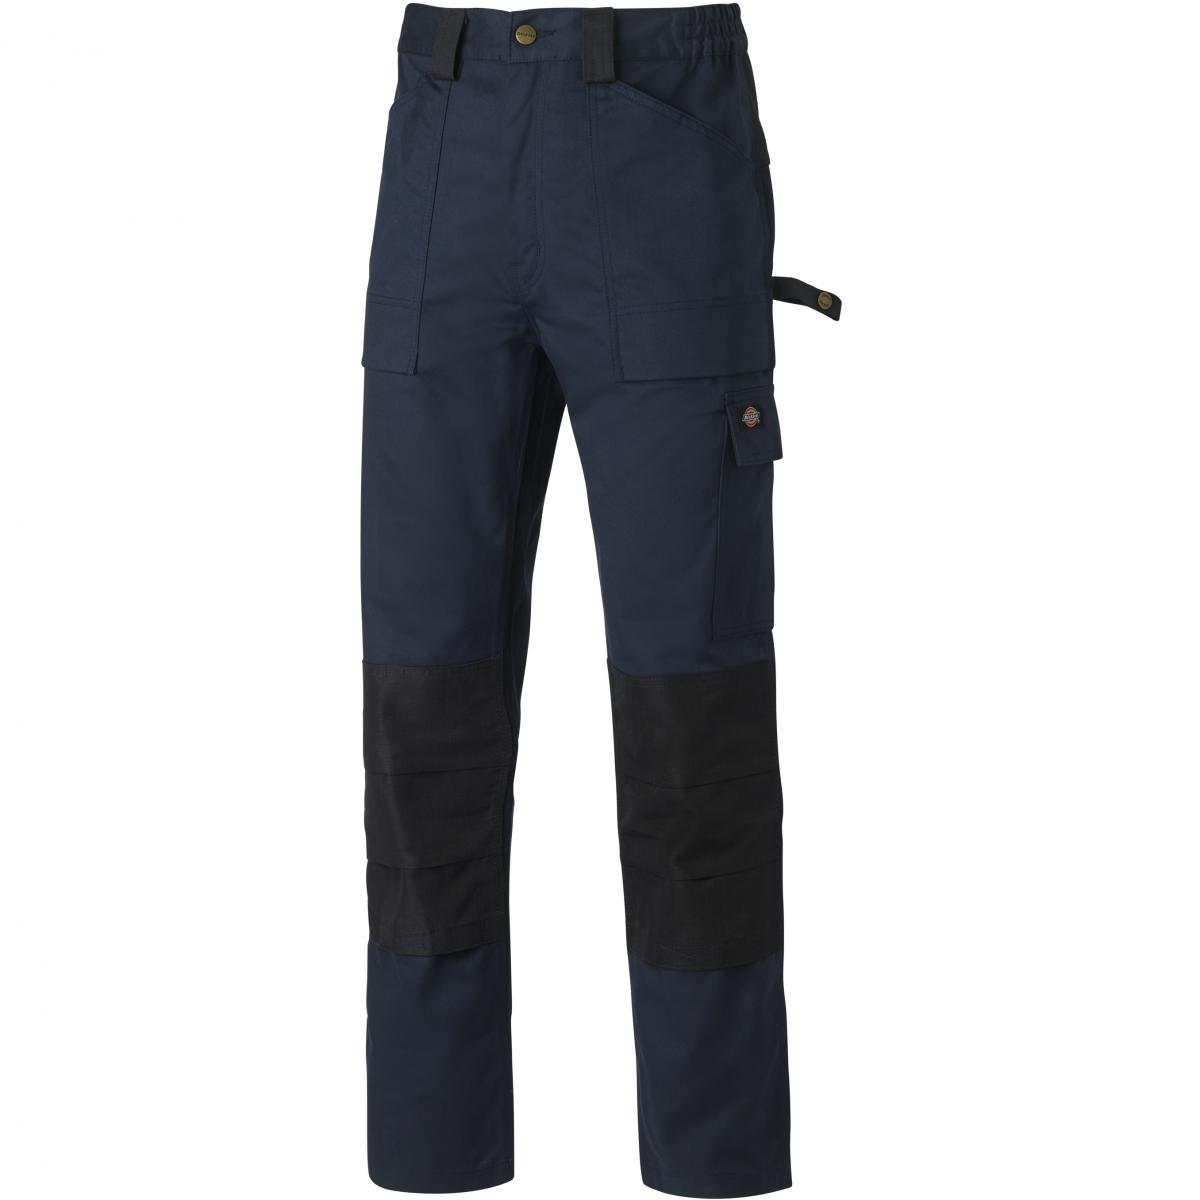 Hersteller: Dickies Herstellernummer: WD4930 Artikelbezeichnung: GDT 290 Hose - Arbeitshose Farbe: Marineblau/Schwarz